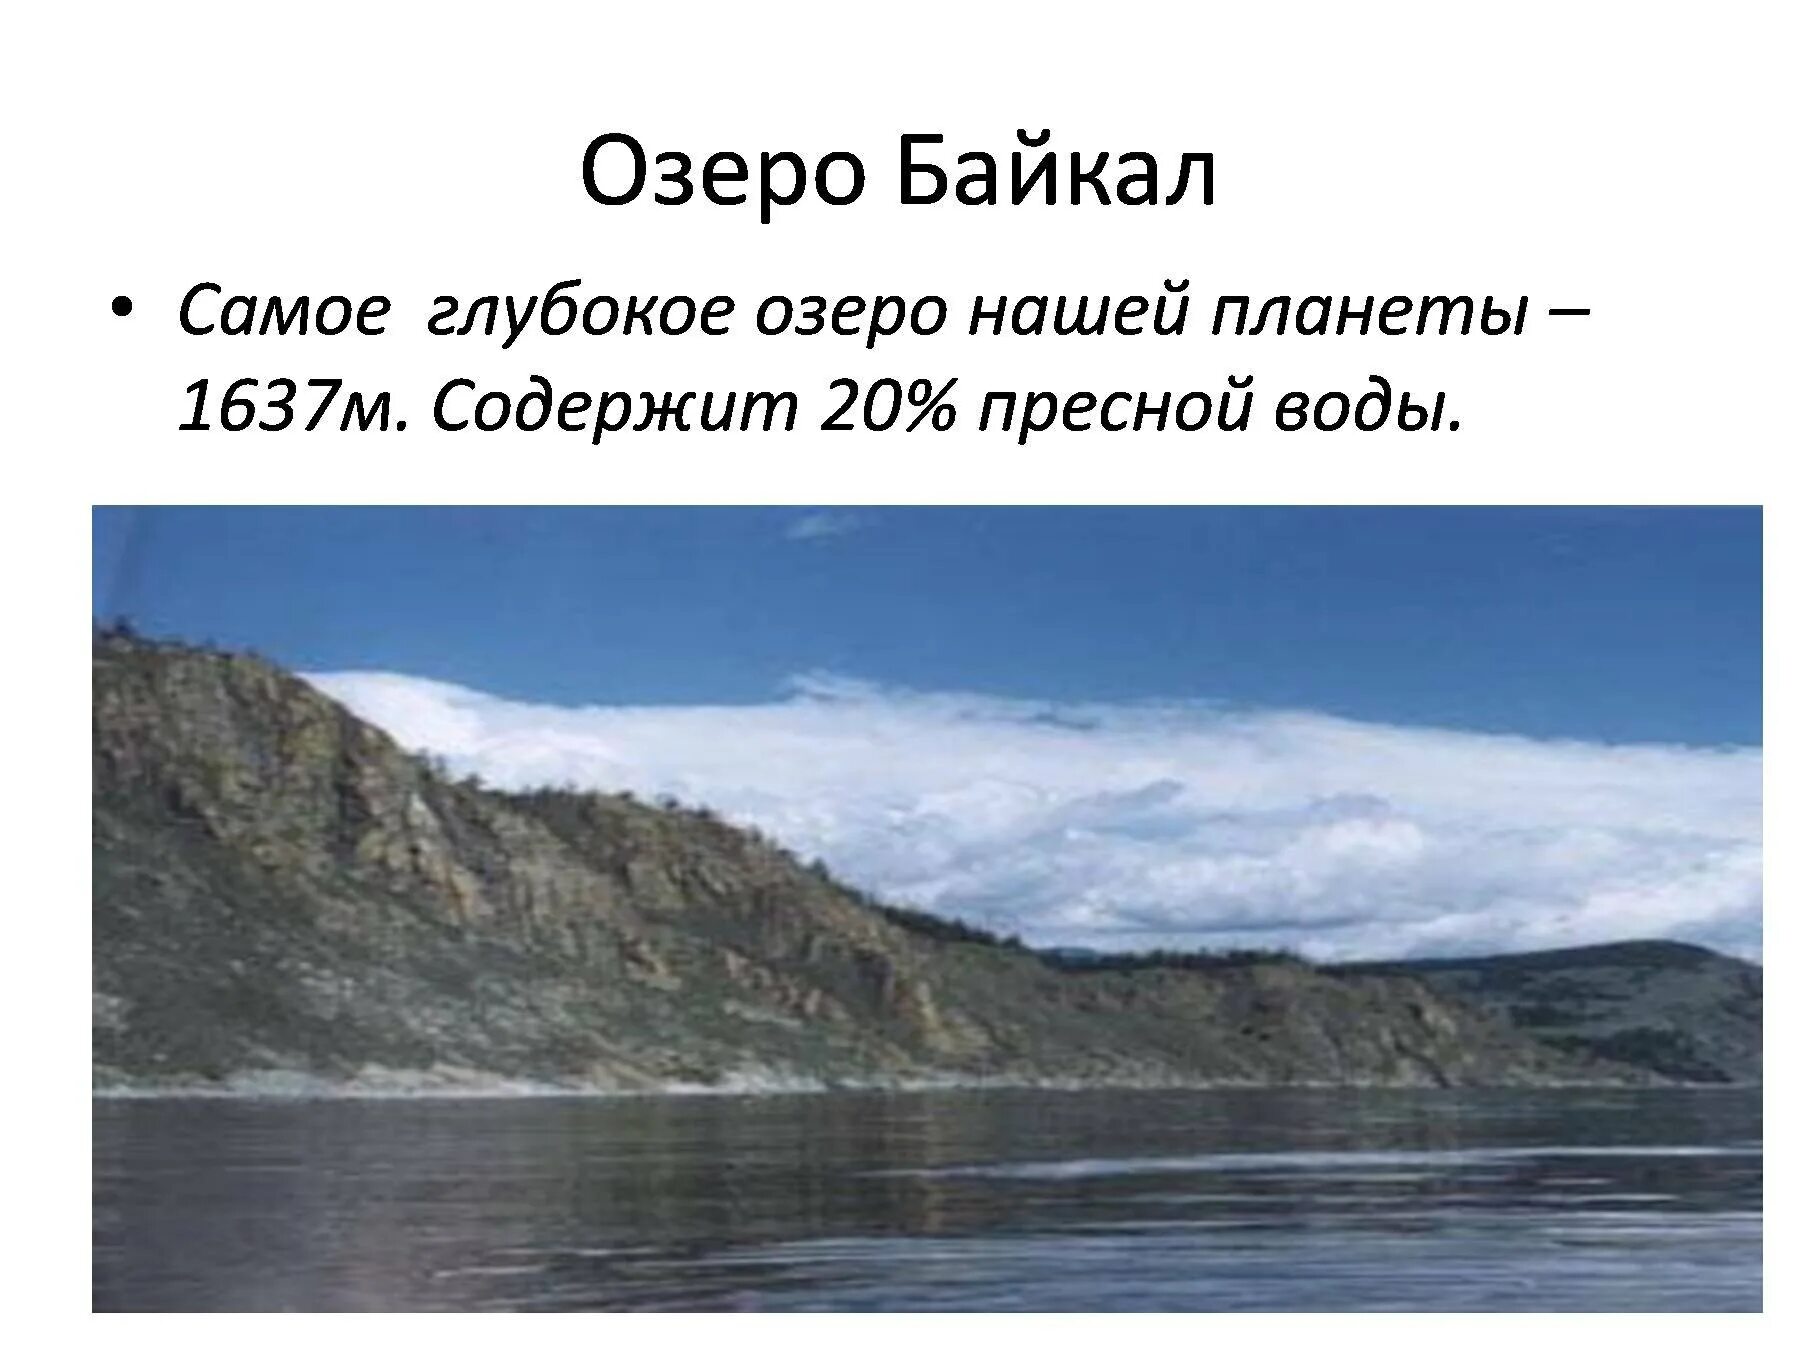 Глубочайшие озера огэ. Самое глубокое озеро нашей планеты. Байкал самое глубокое. Диктант озеро Байкал. Самое глубокое озеро диктант Байкал глубочайшее озеро.